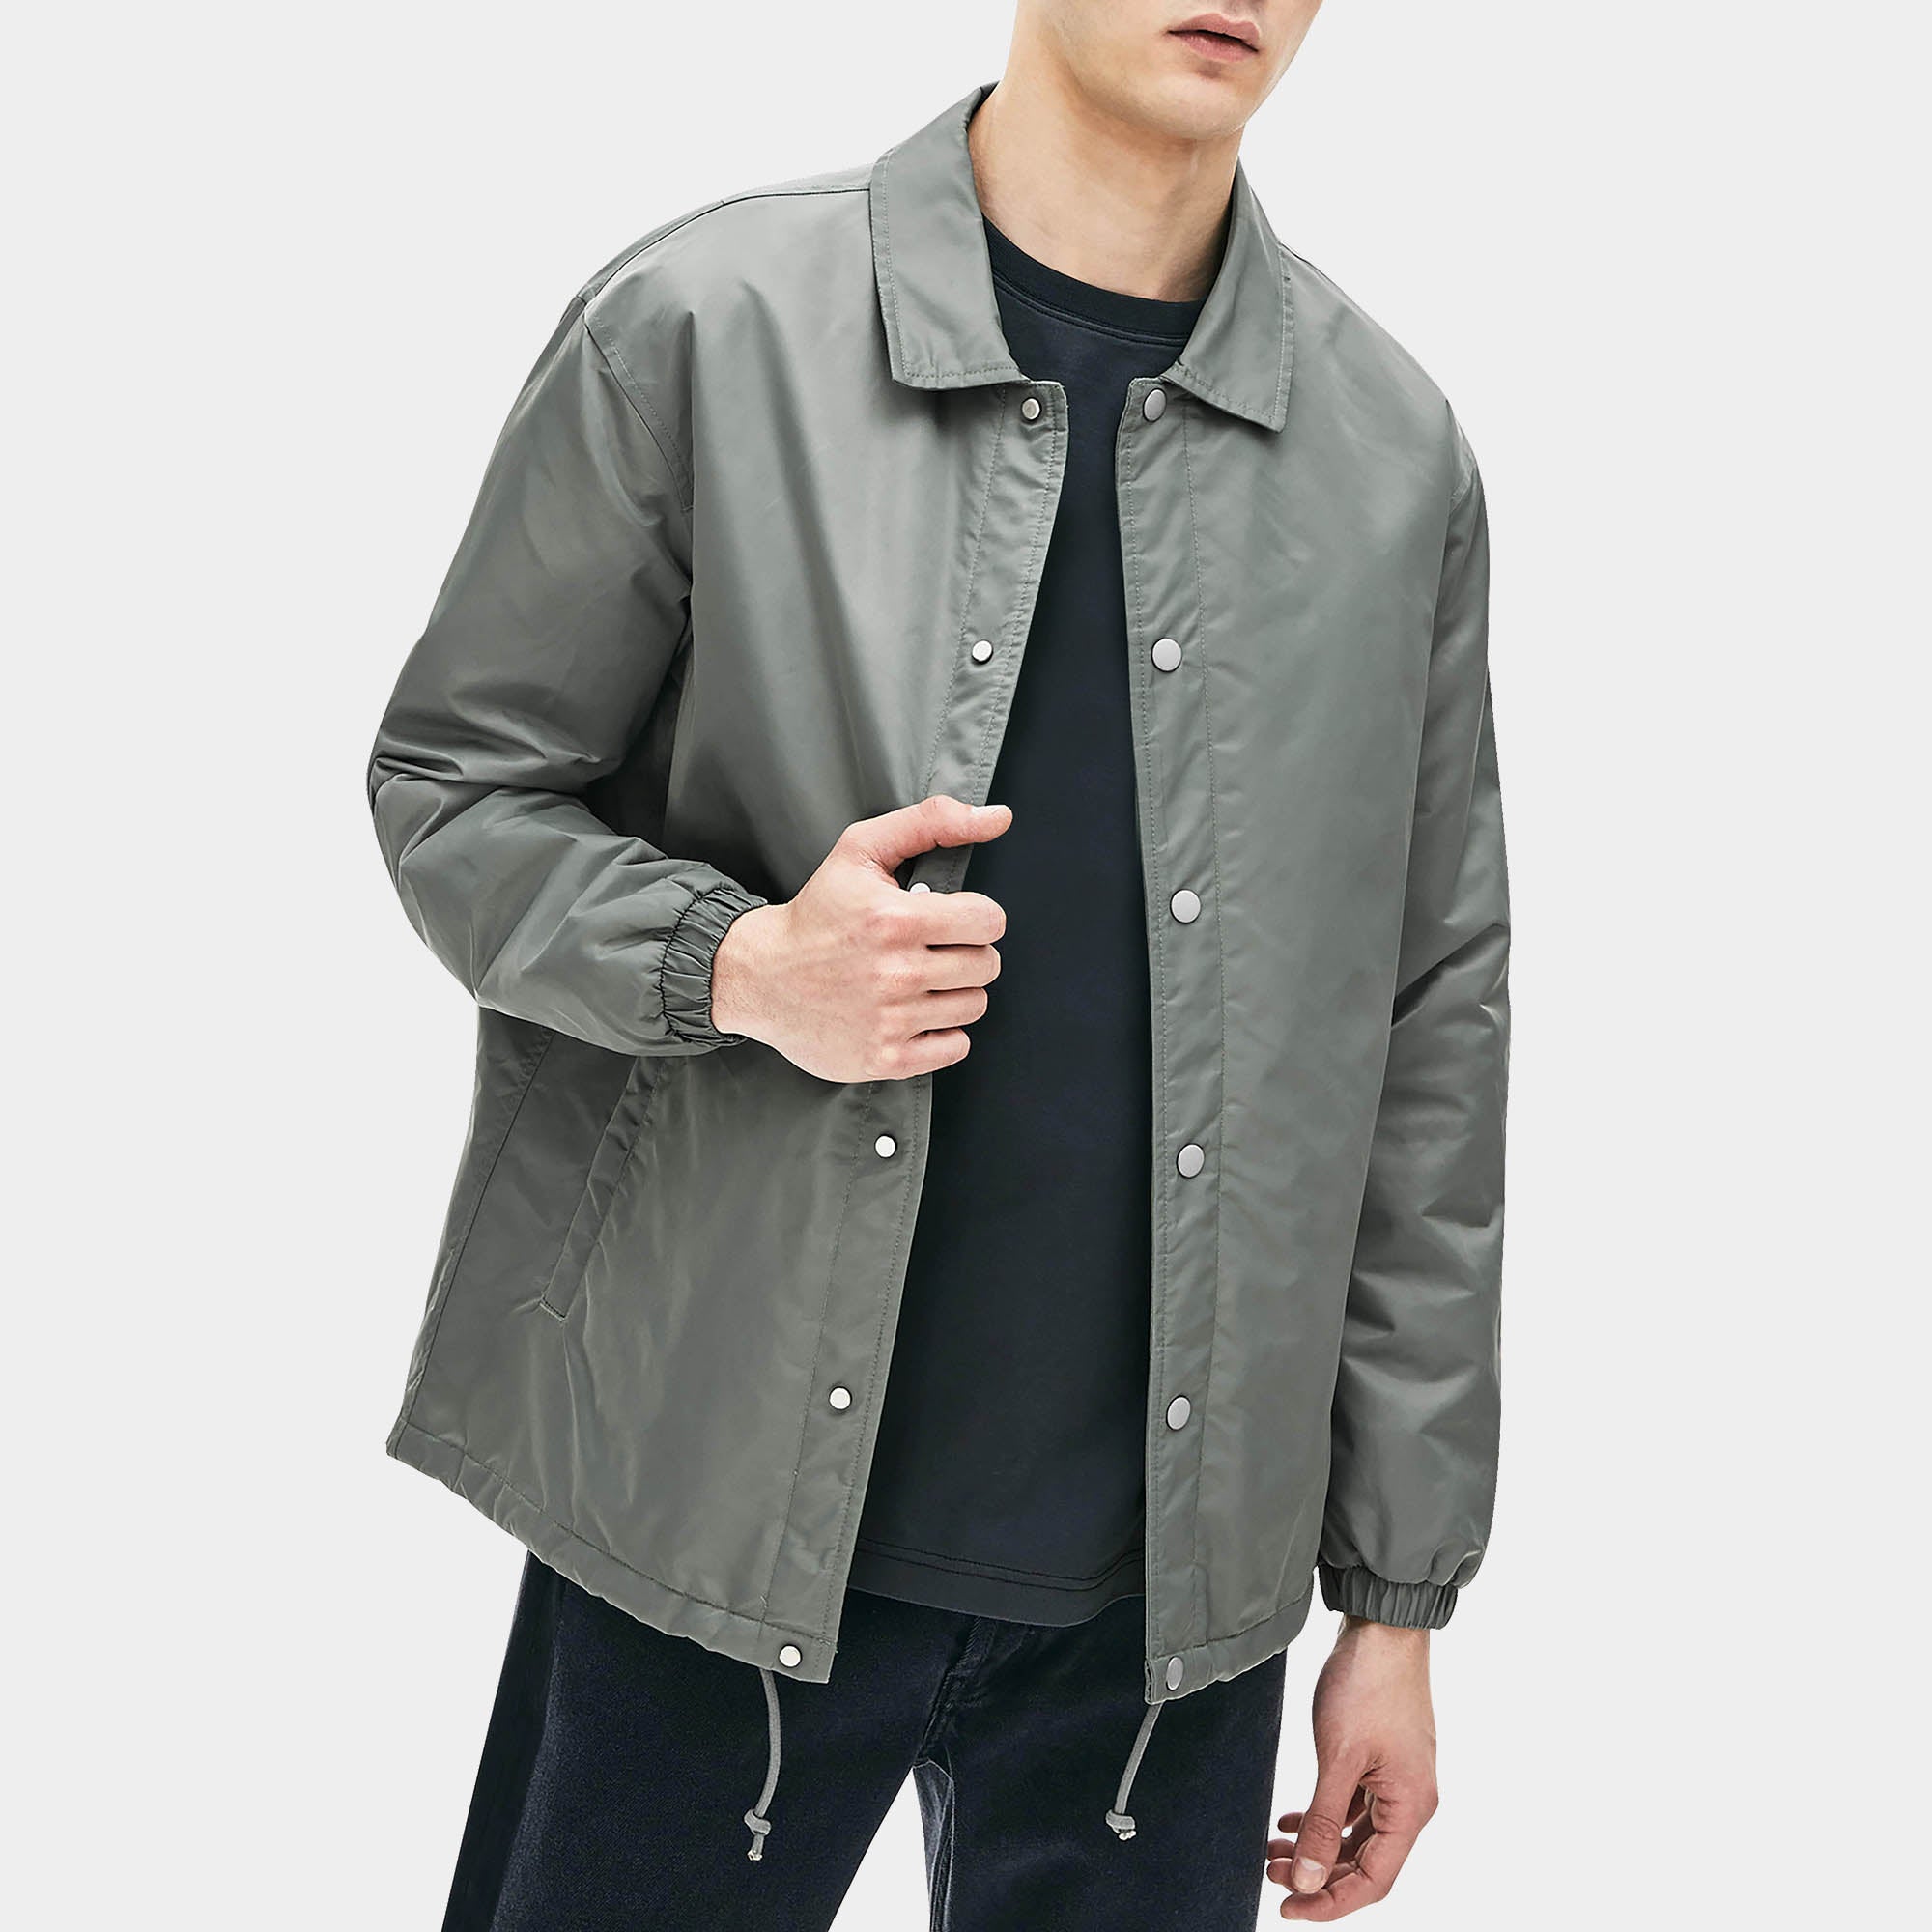 waterproof jacket_waterproofs_mens waterproof jacket_best rain jacket_lightweight waterproof jacket_water resistant jacket_Dark Gray